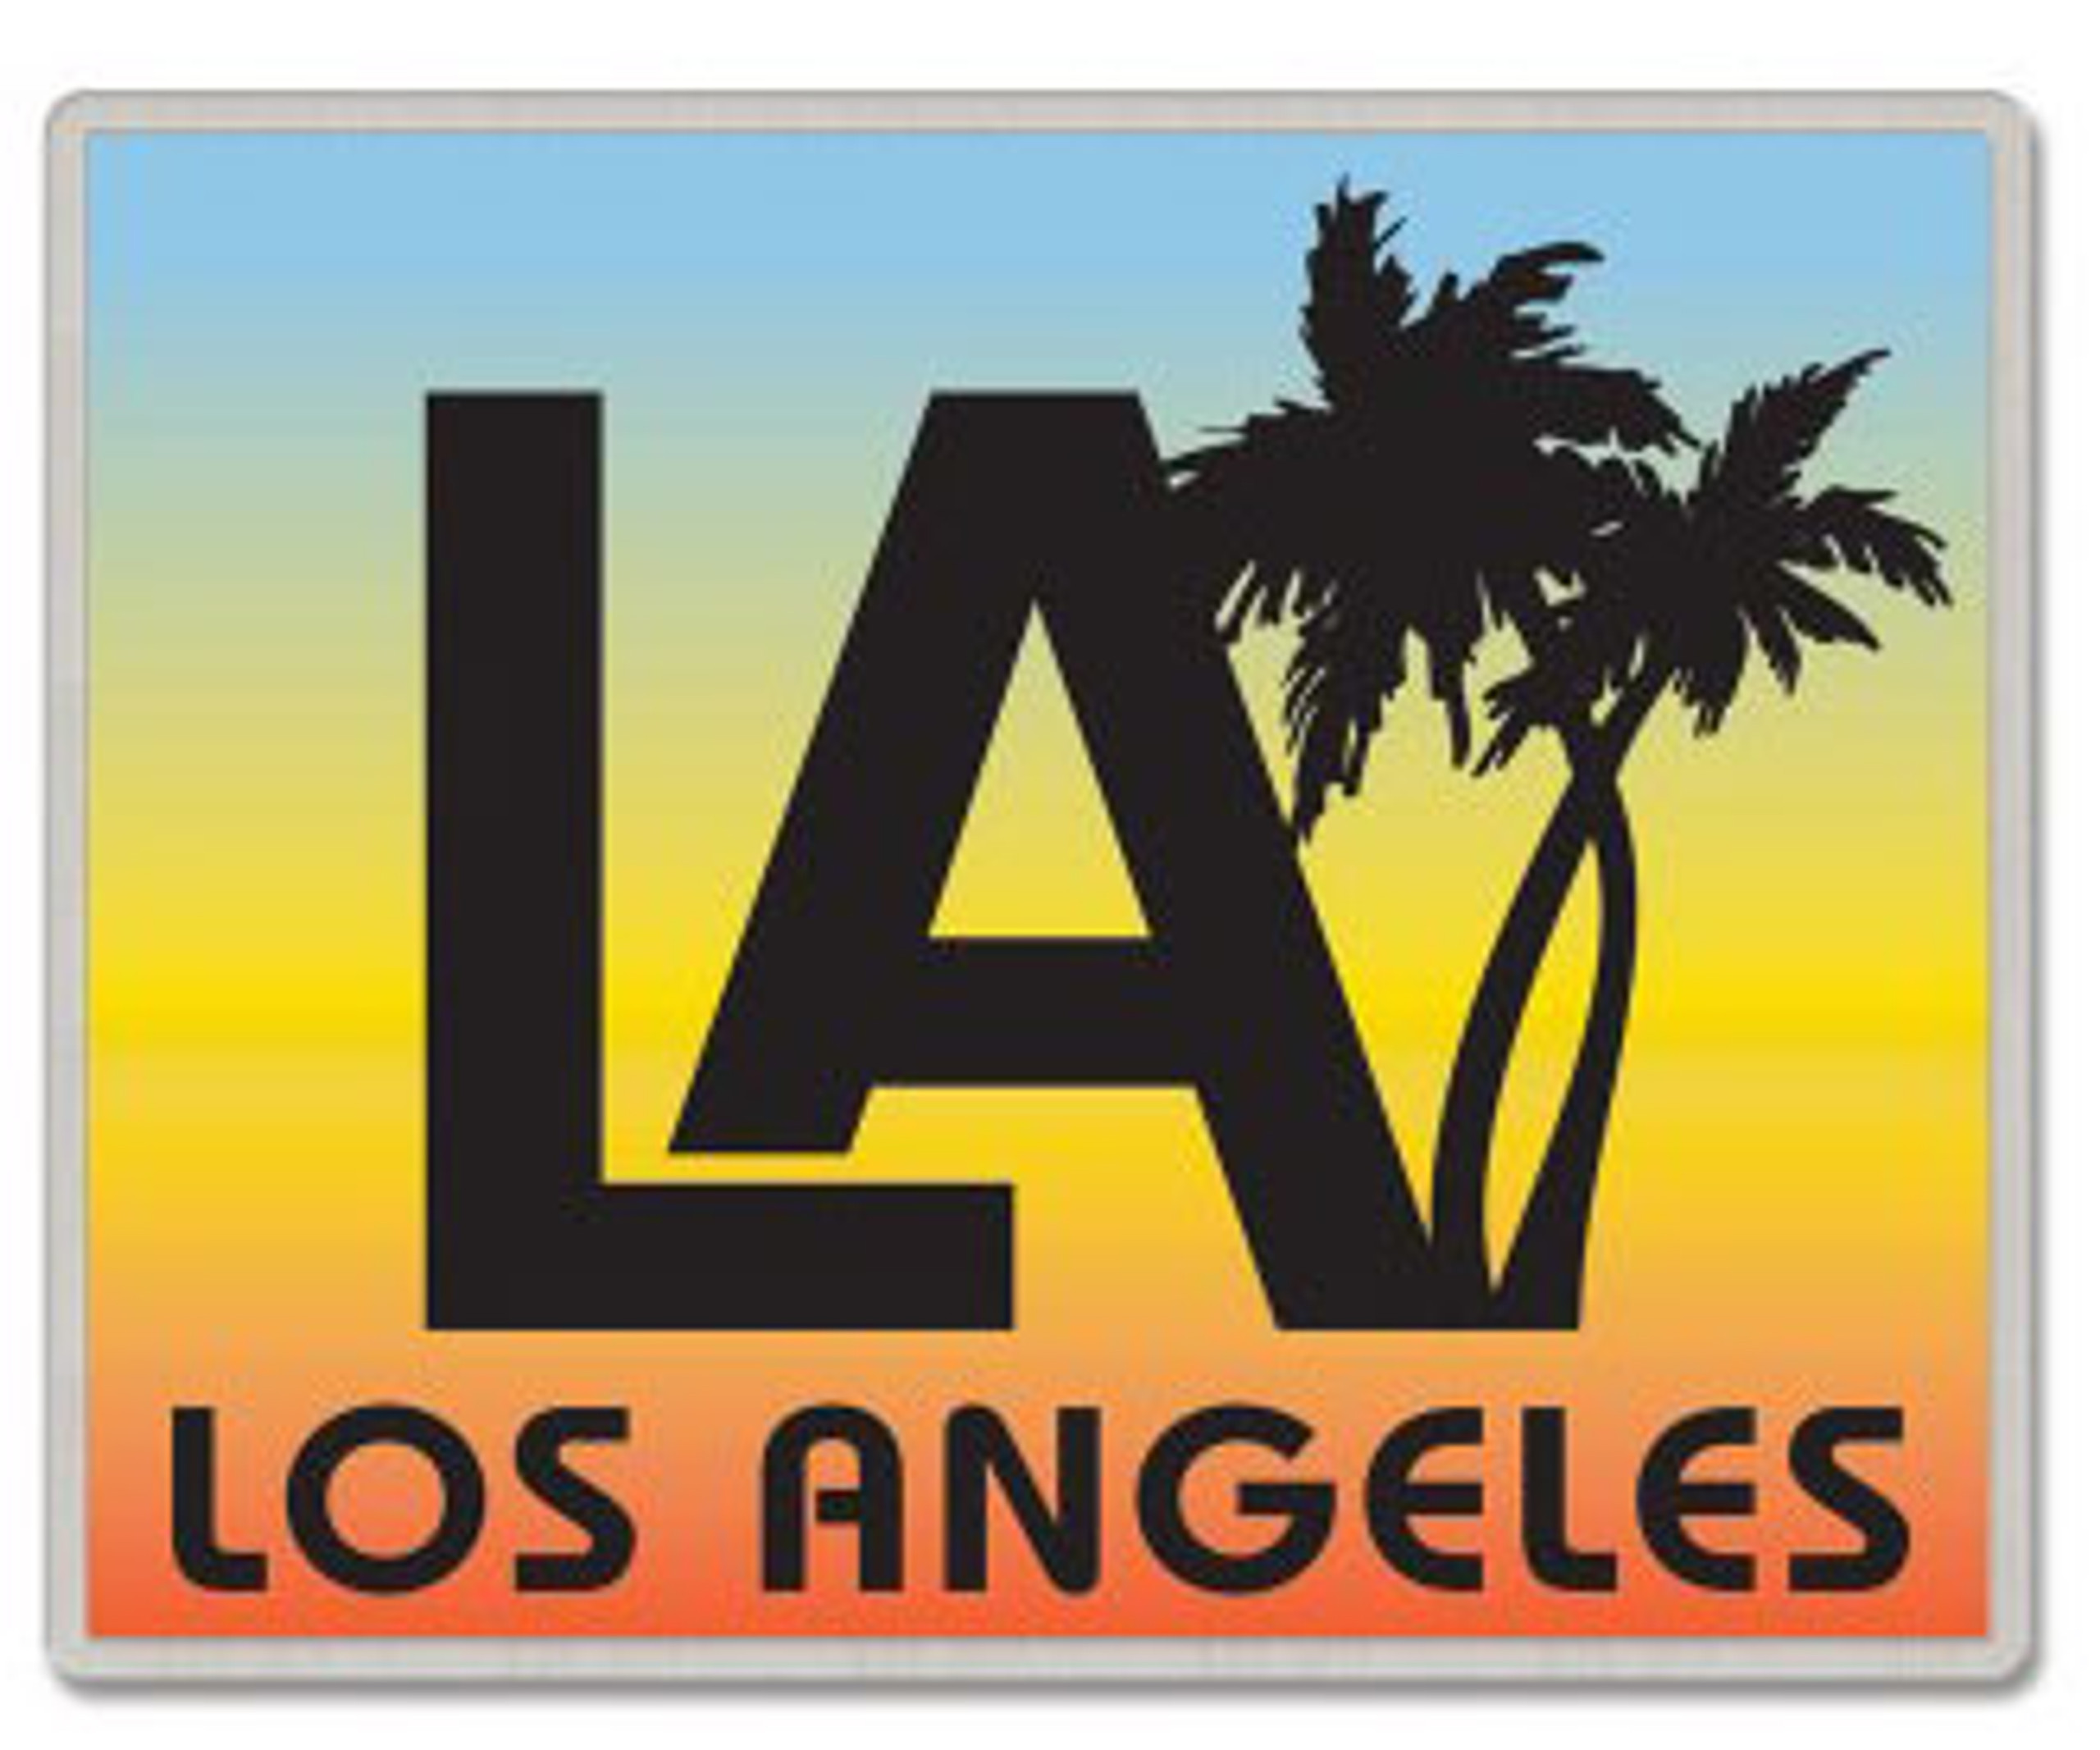 Los Angeles California Lapel Pin